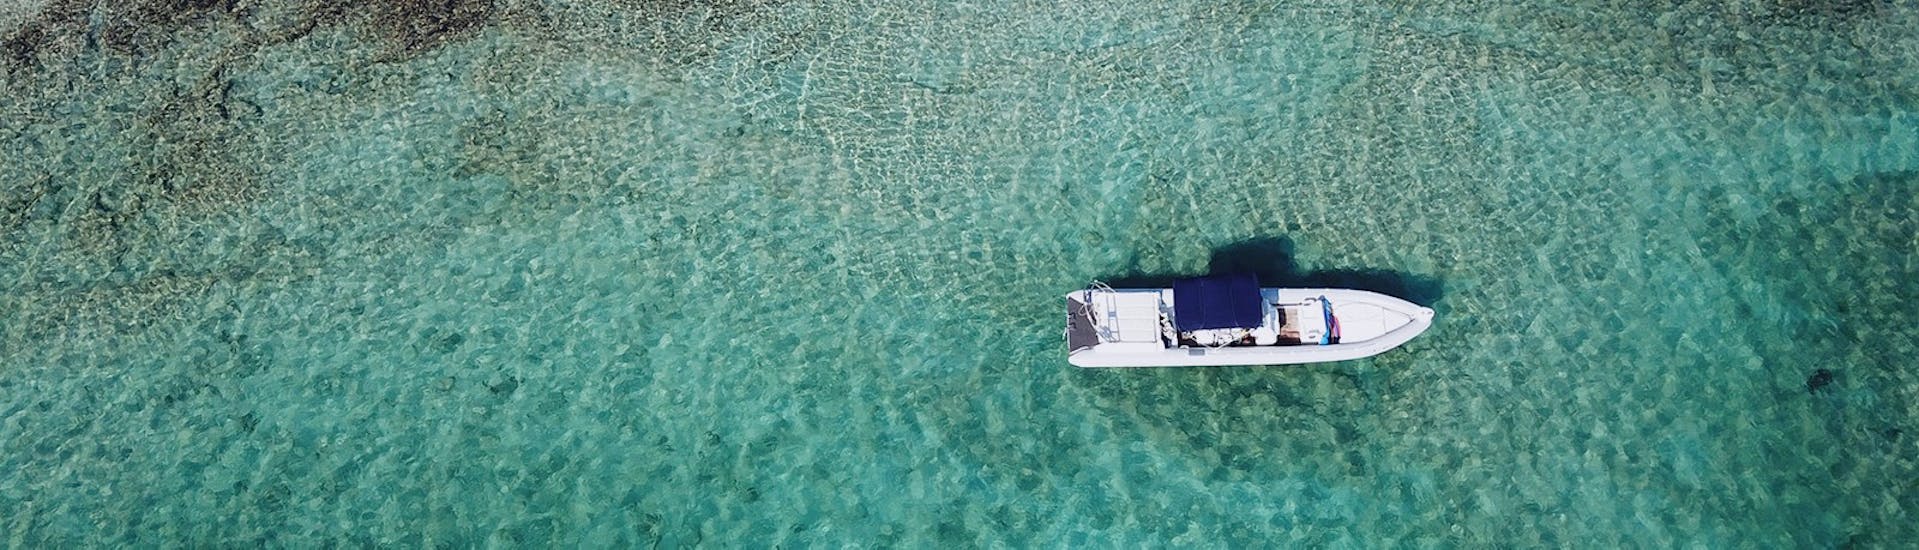 De RIB boot van SEAze the Day drijft op het kristalheldere water van Kreta.